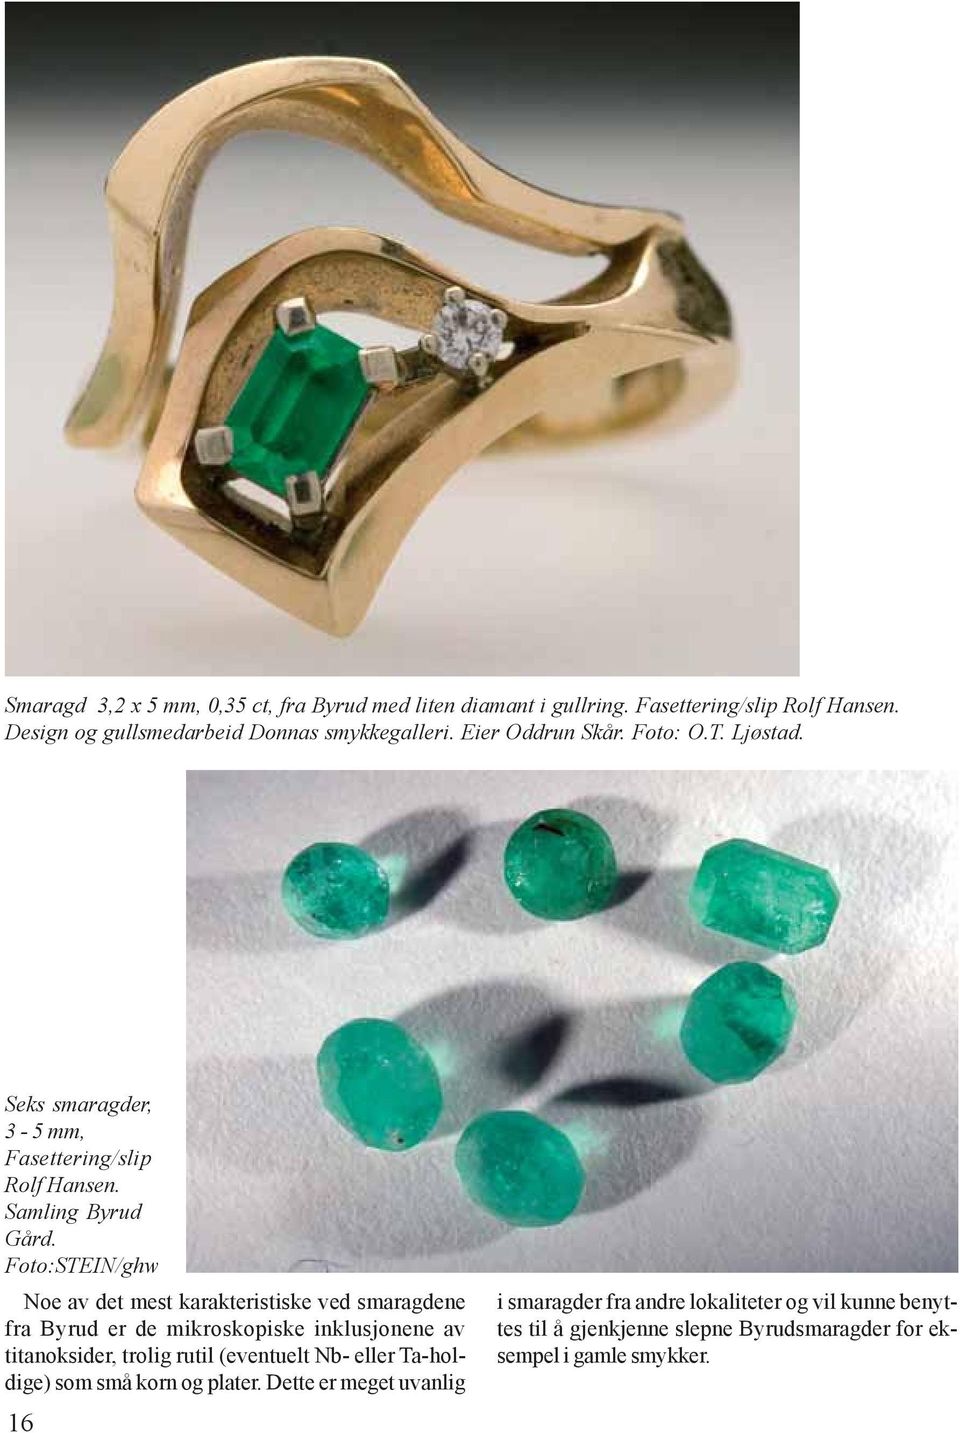 Foto:STEIN/ghw Noe av det mest karakteristiske ved smaragdene fra Byrud er de mikroskopiske inklusjonene av titanoksider, trolig rutil (eventuelt Nb-